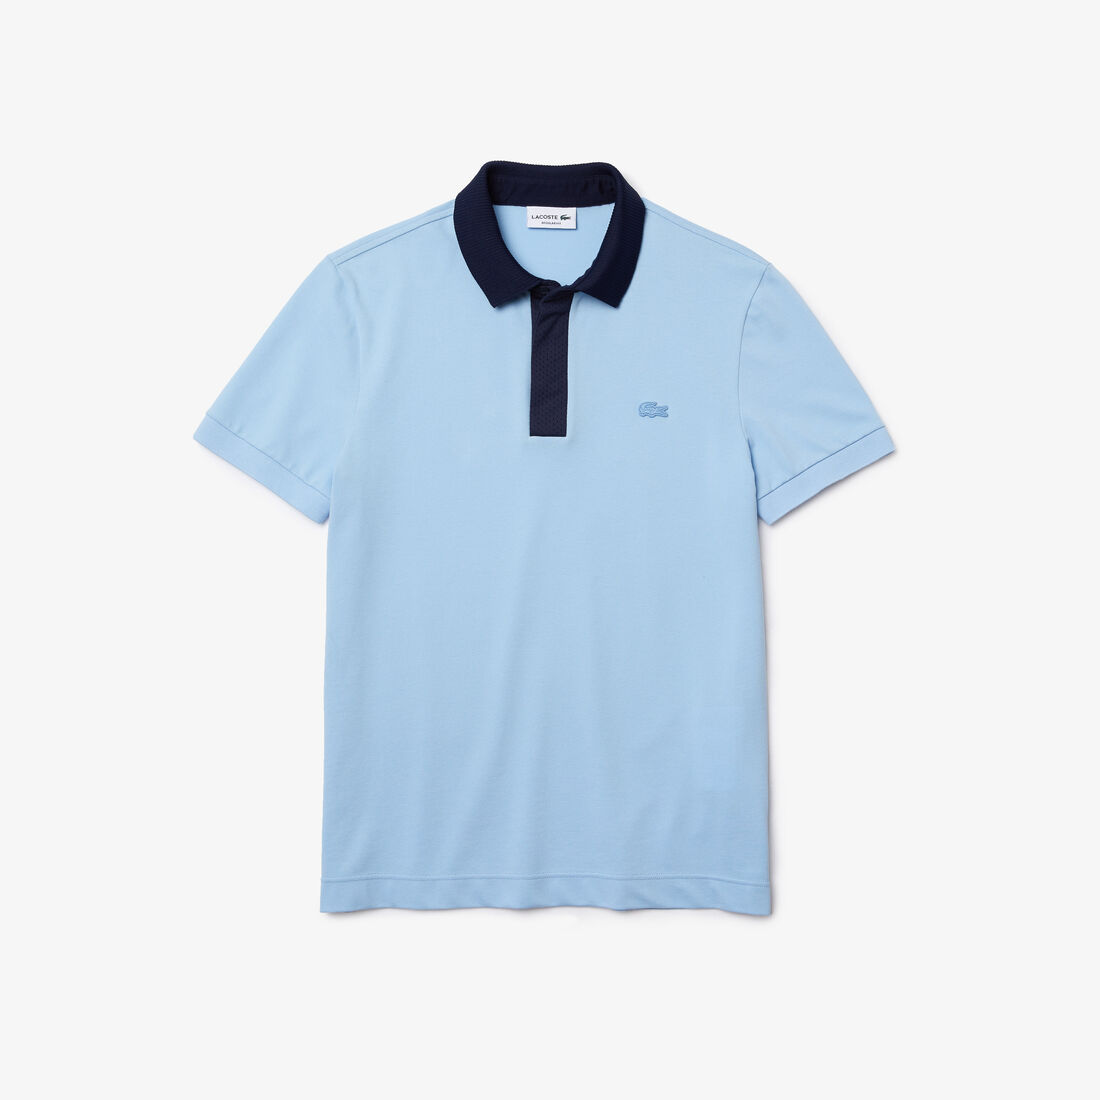 Men’s Lacoste Organic Cotton Piqué Polo Shirt